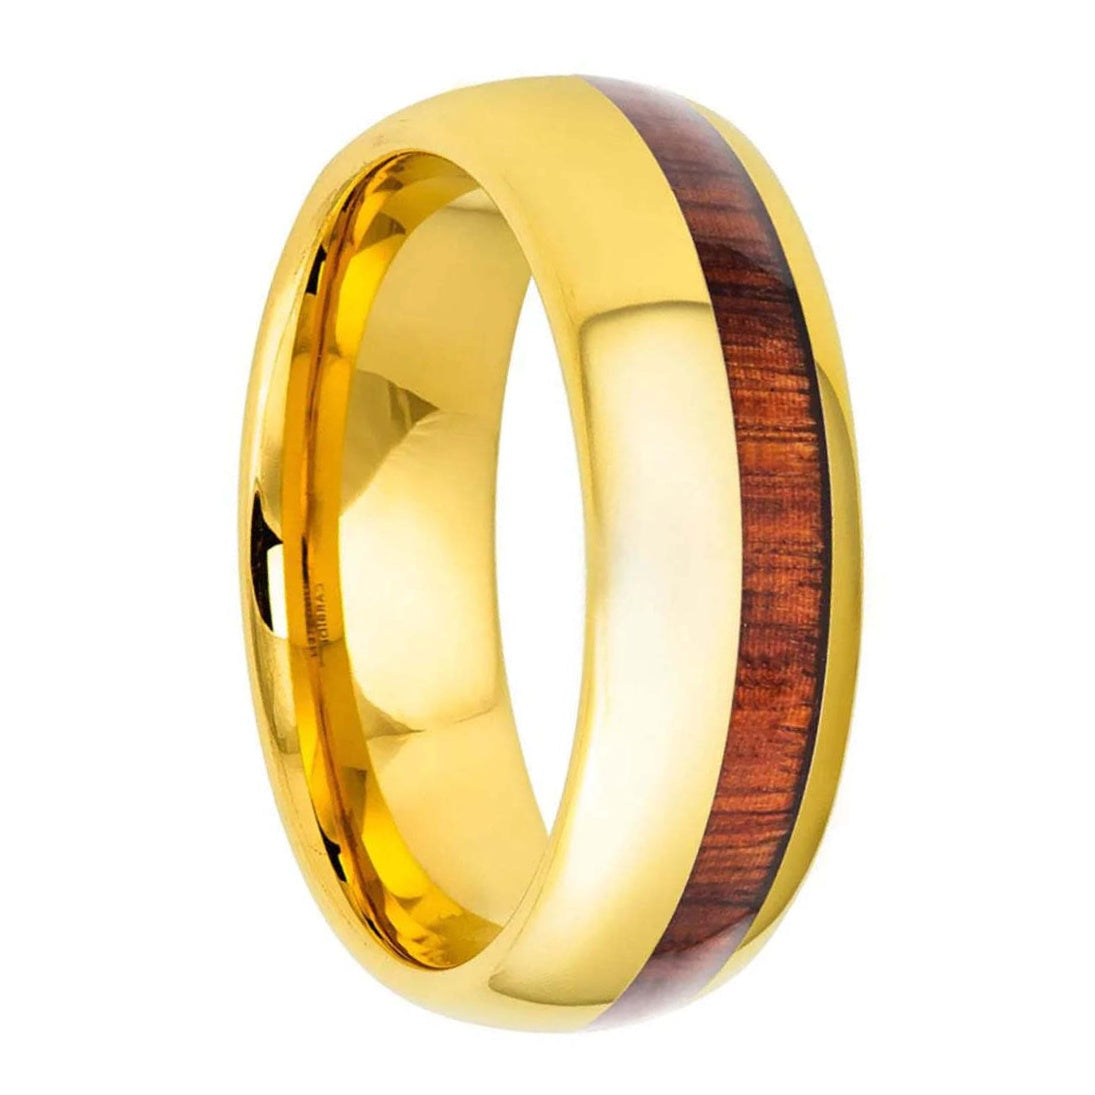 Half Koa Wood Inlaid Gold Tungsten Men's Wedding Band